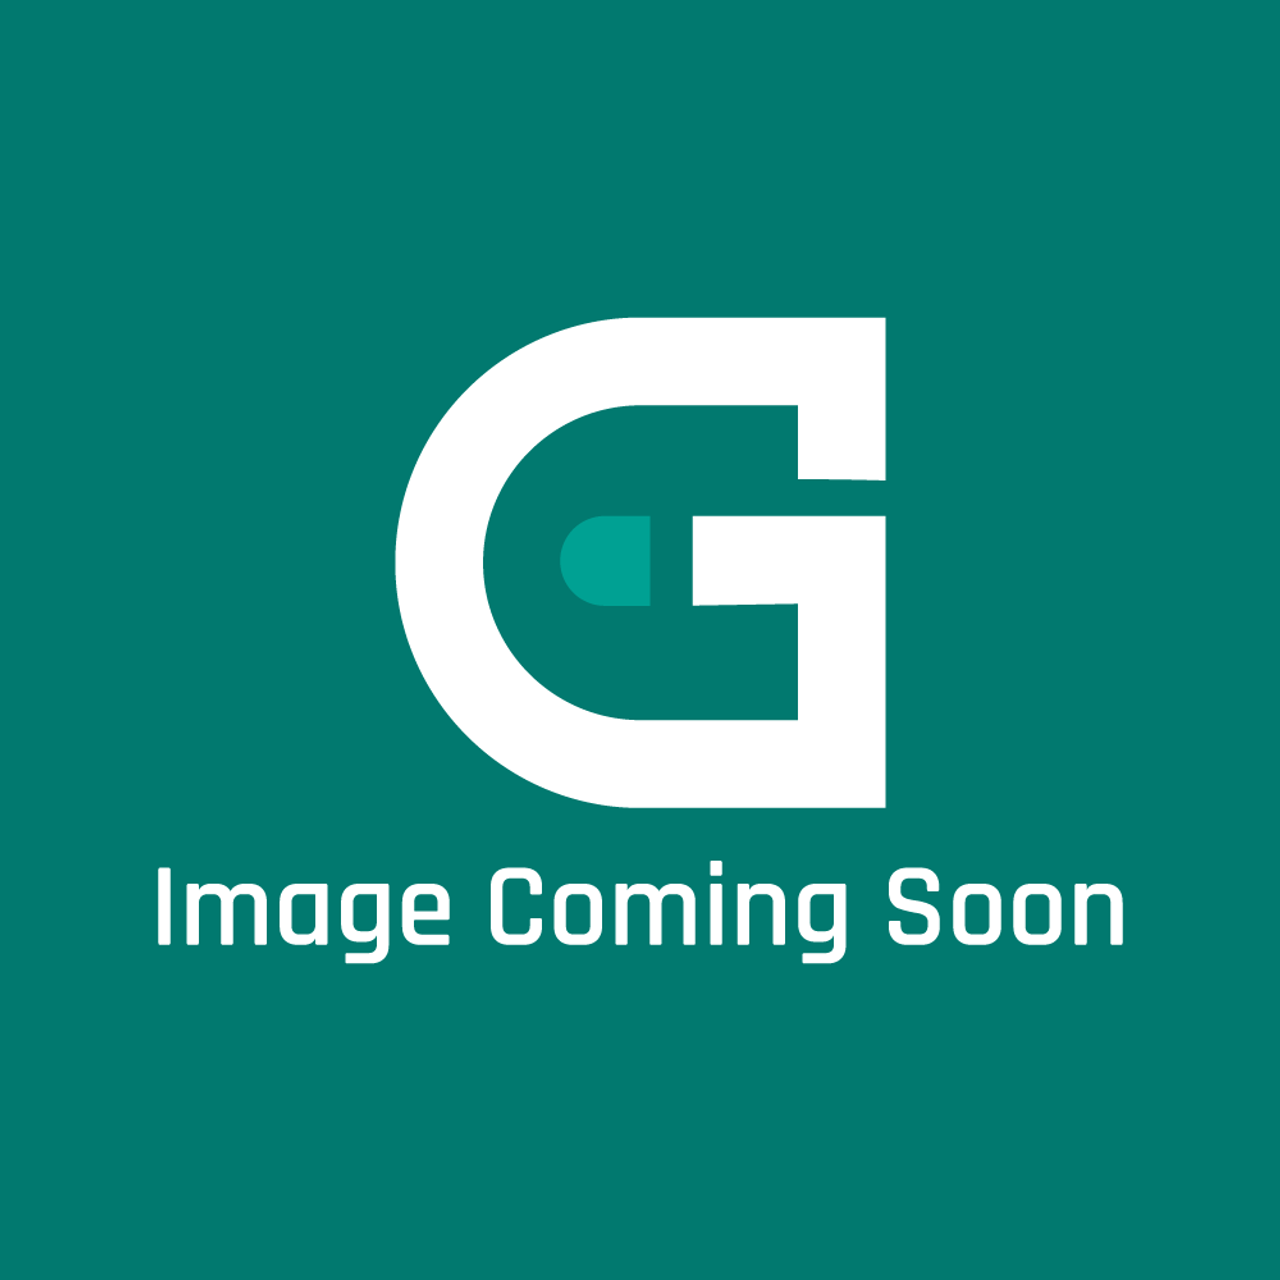 Viking PS400084 - GLIDE, PANTRY DOOR - Image Coming Soon!